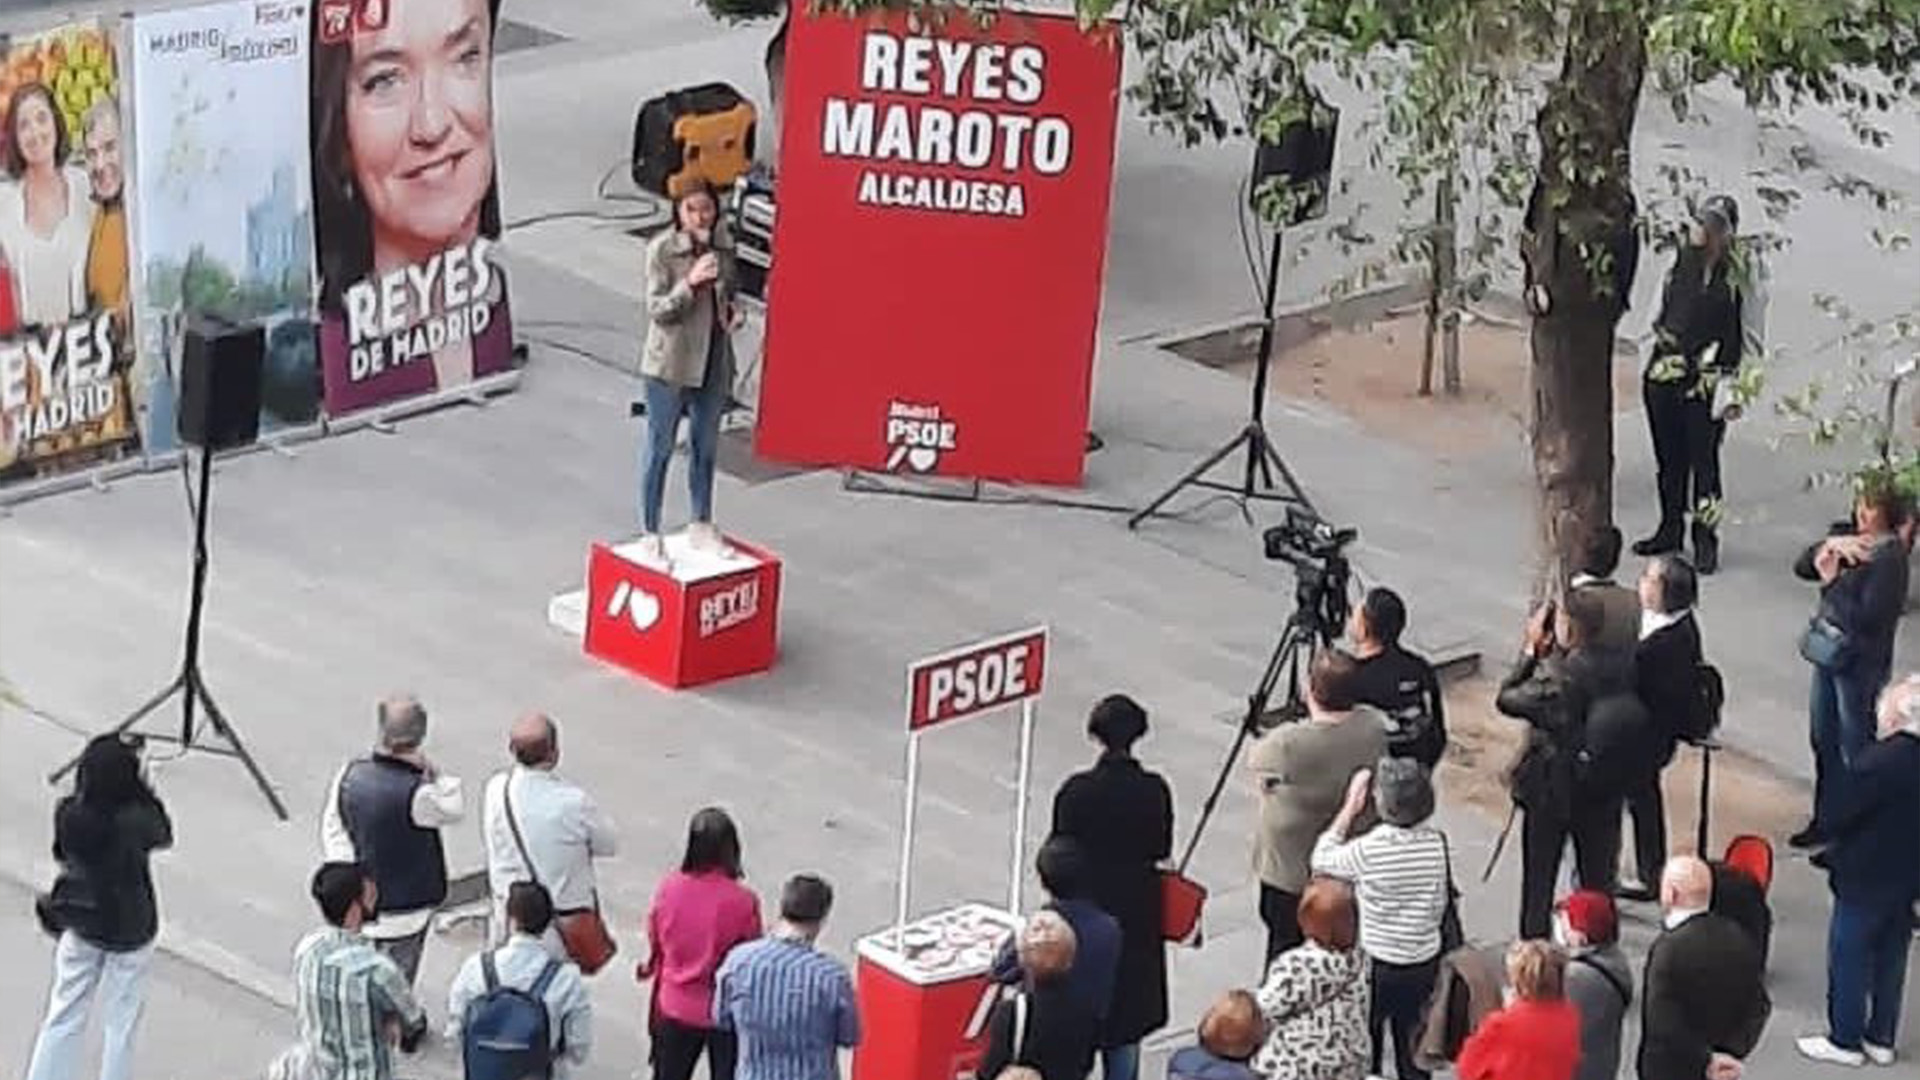 Reyes Maroto, de pinchazo en pinchazo en los mítines de Madrid: "Va a ser peor que Pepu"